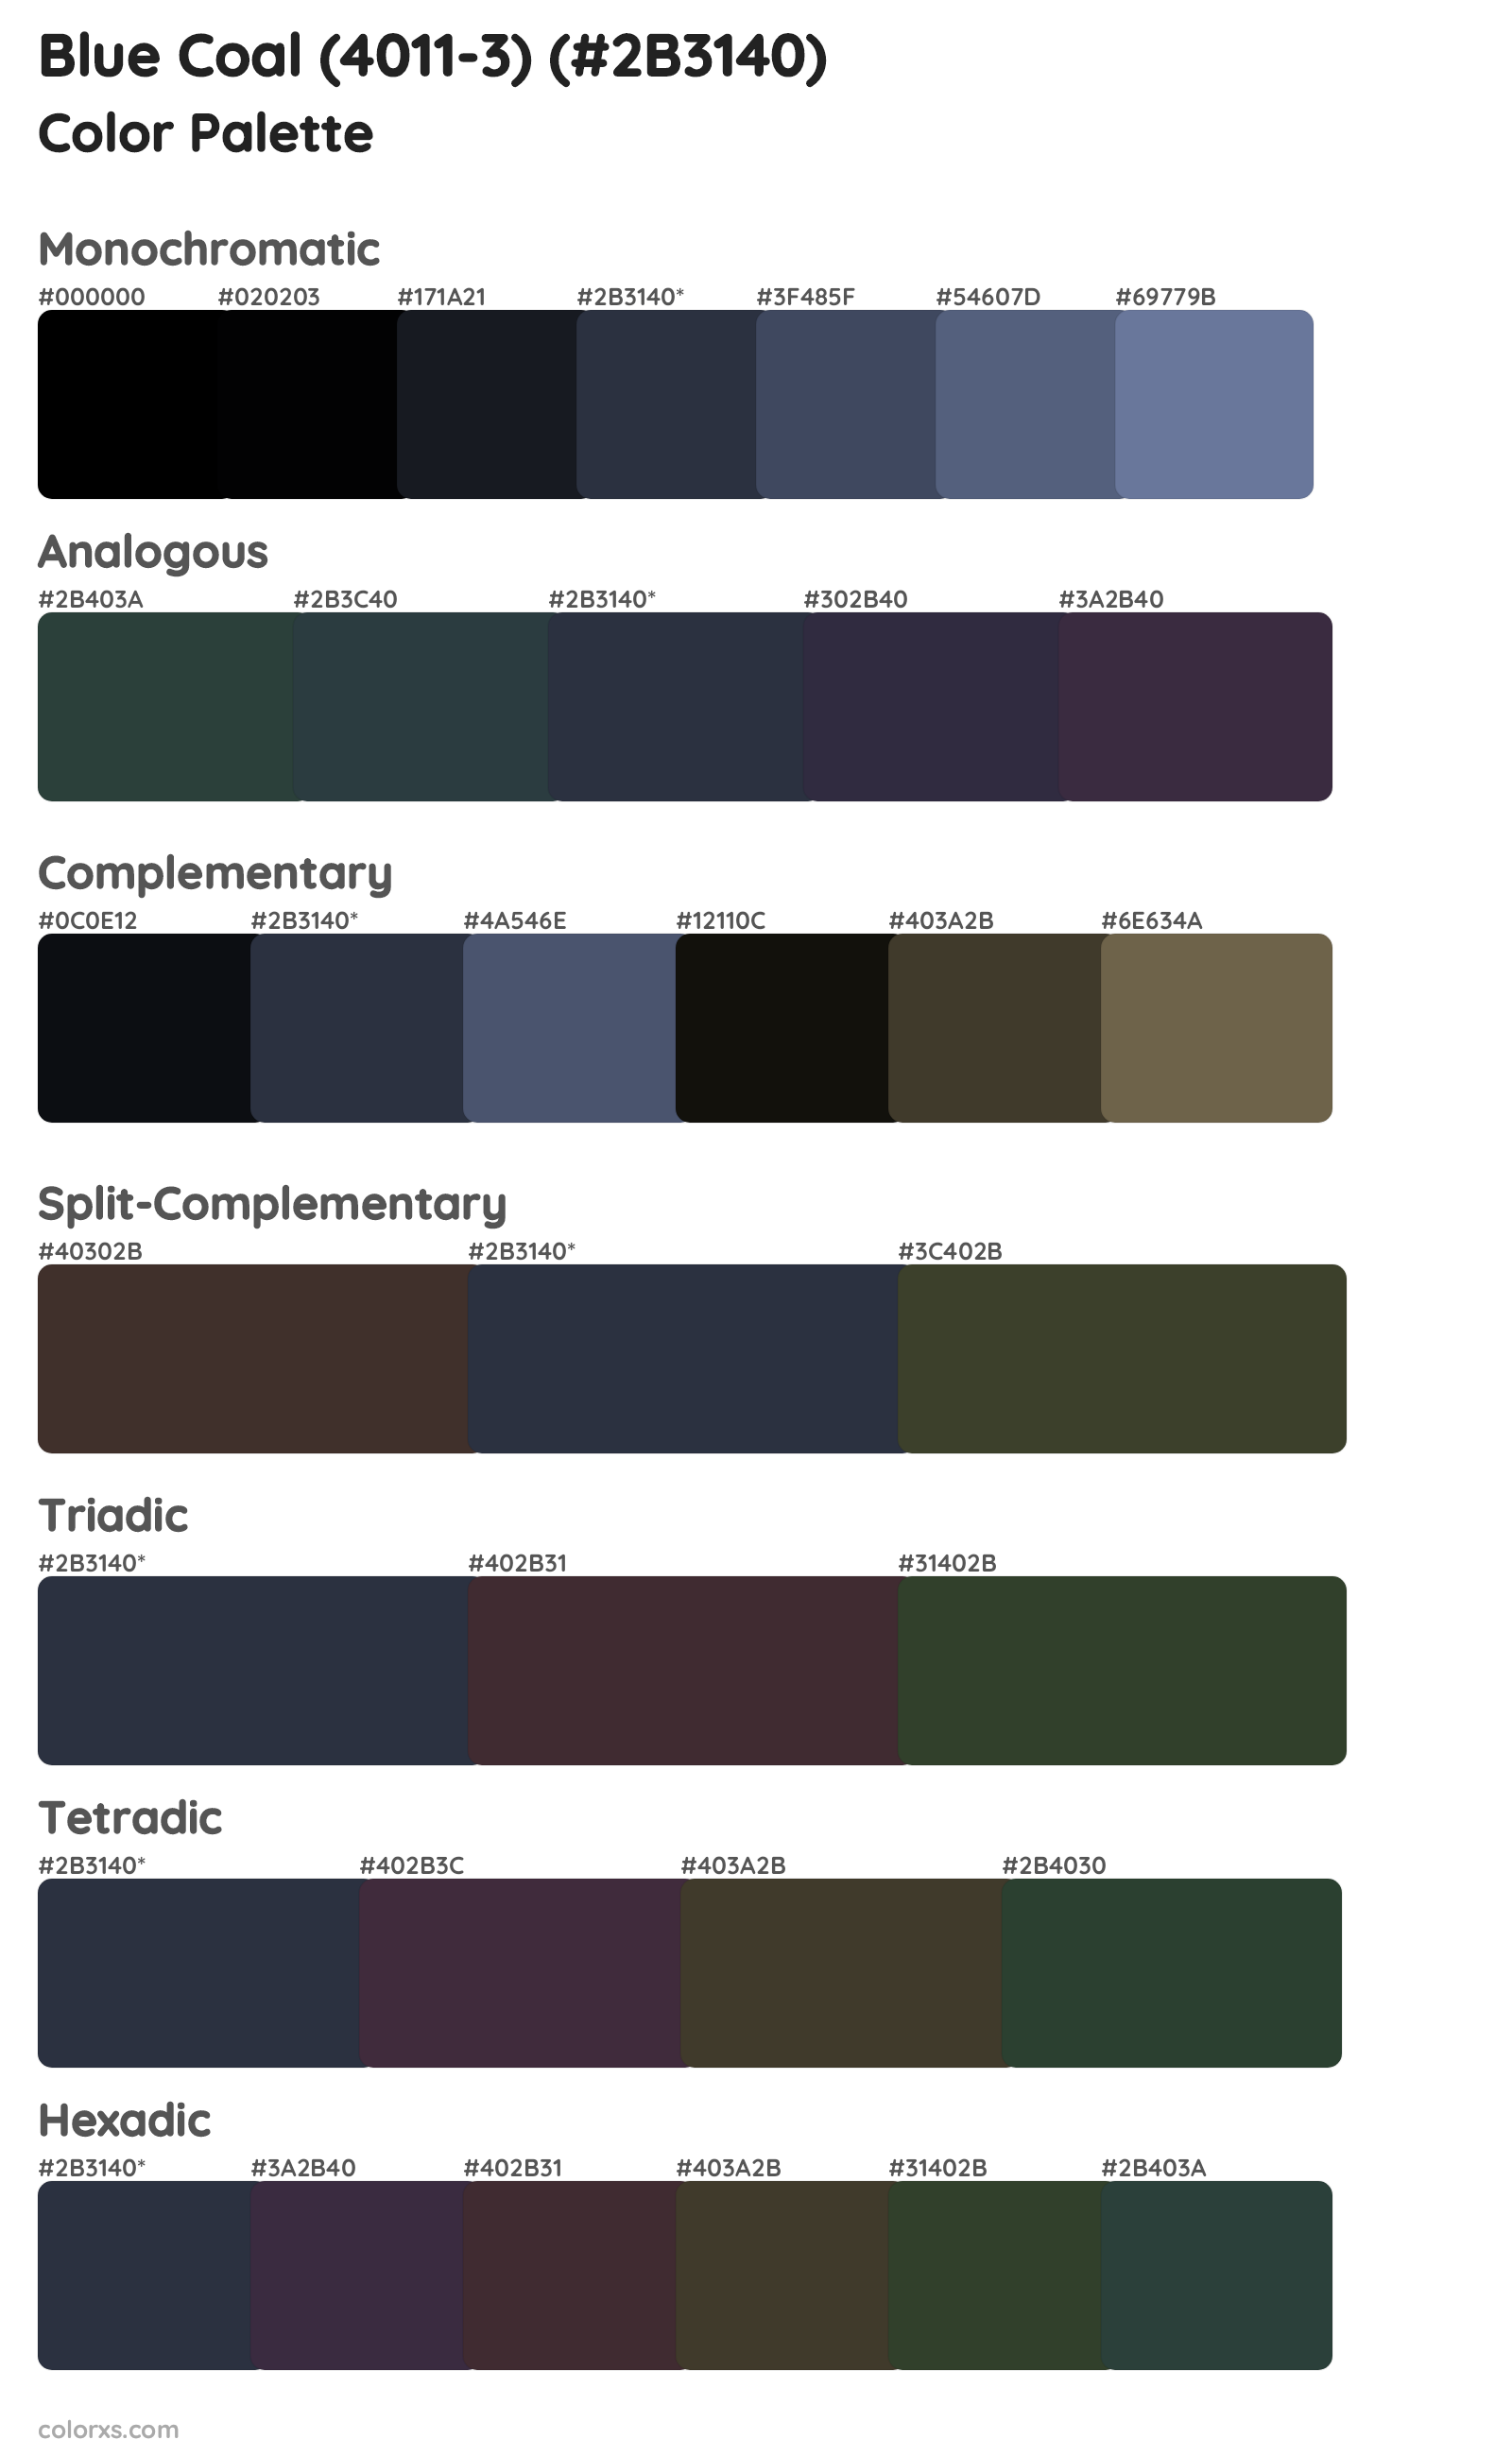 Blue Coal (4011-3) Color Scheme Palettes